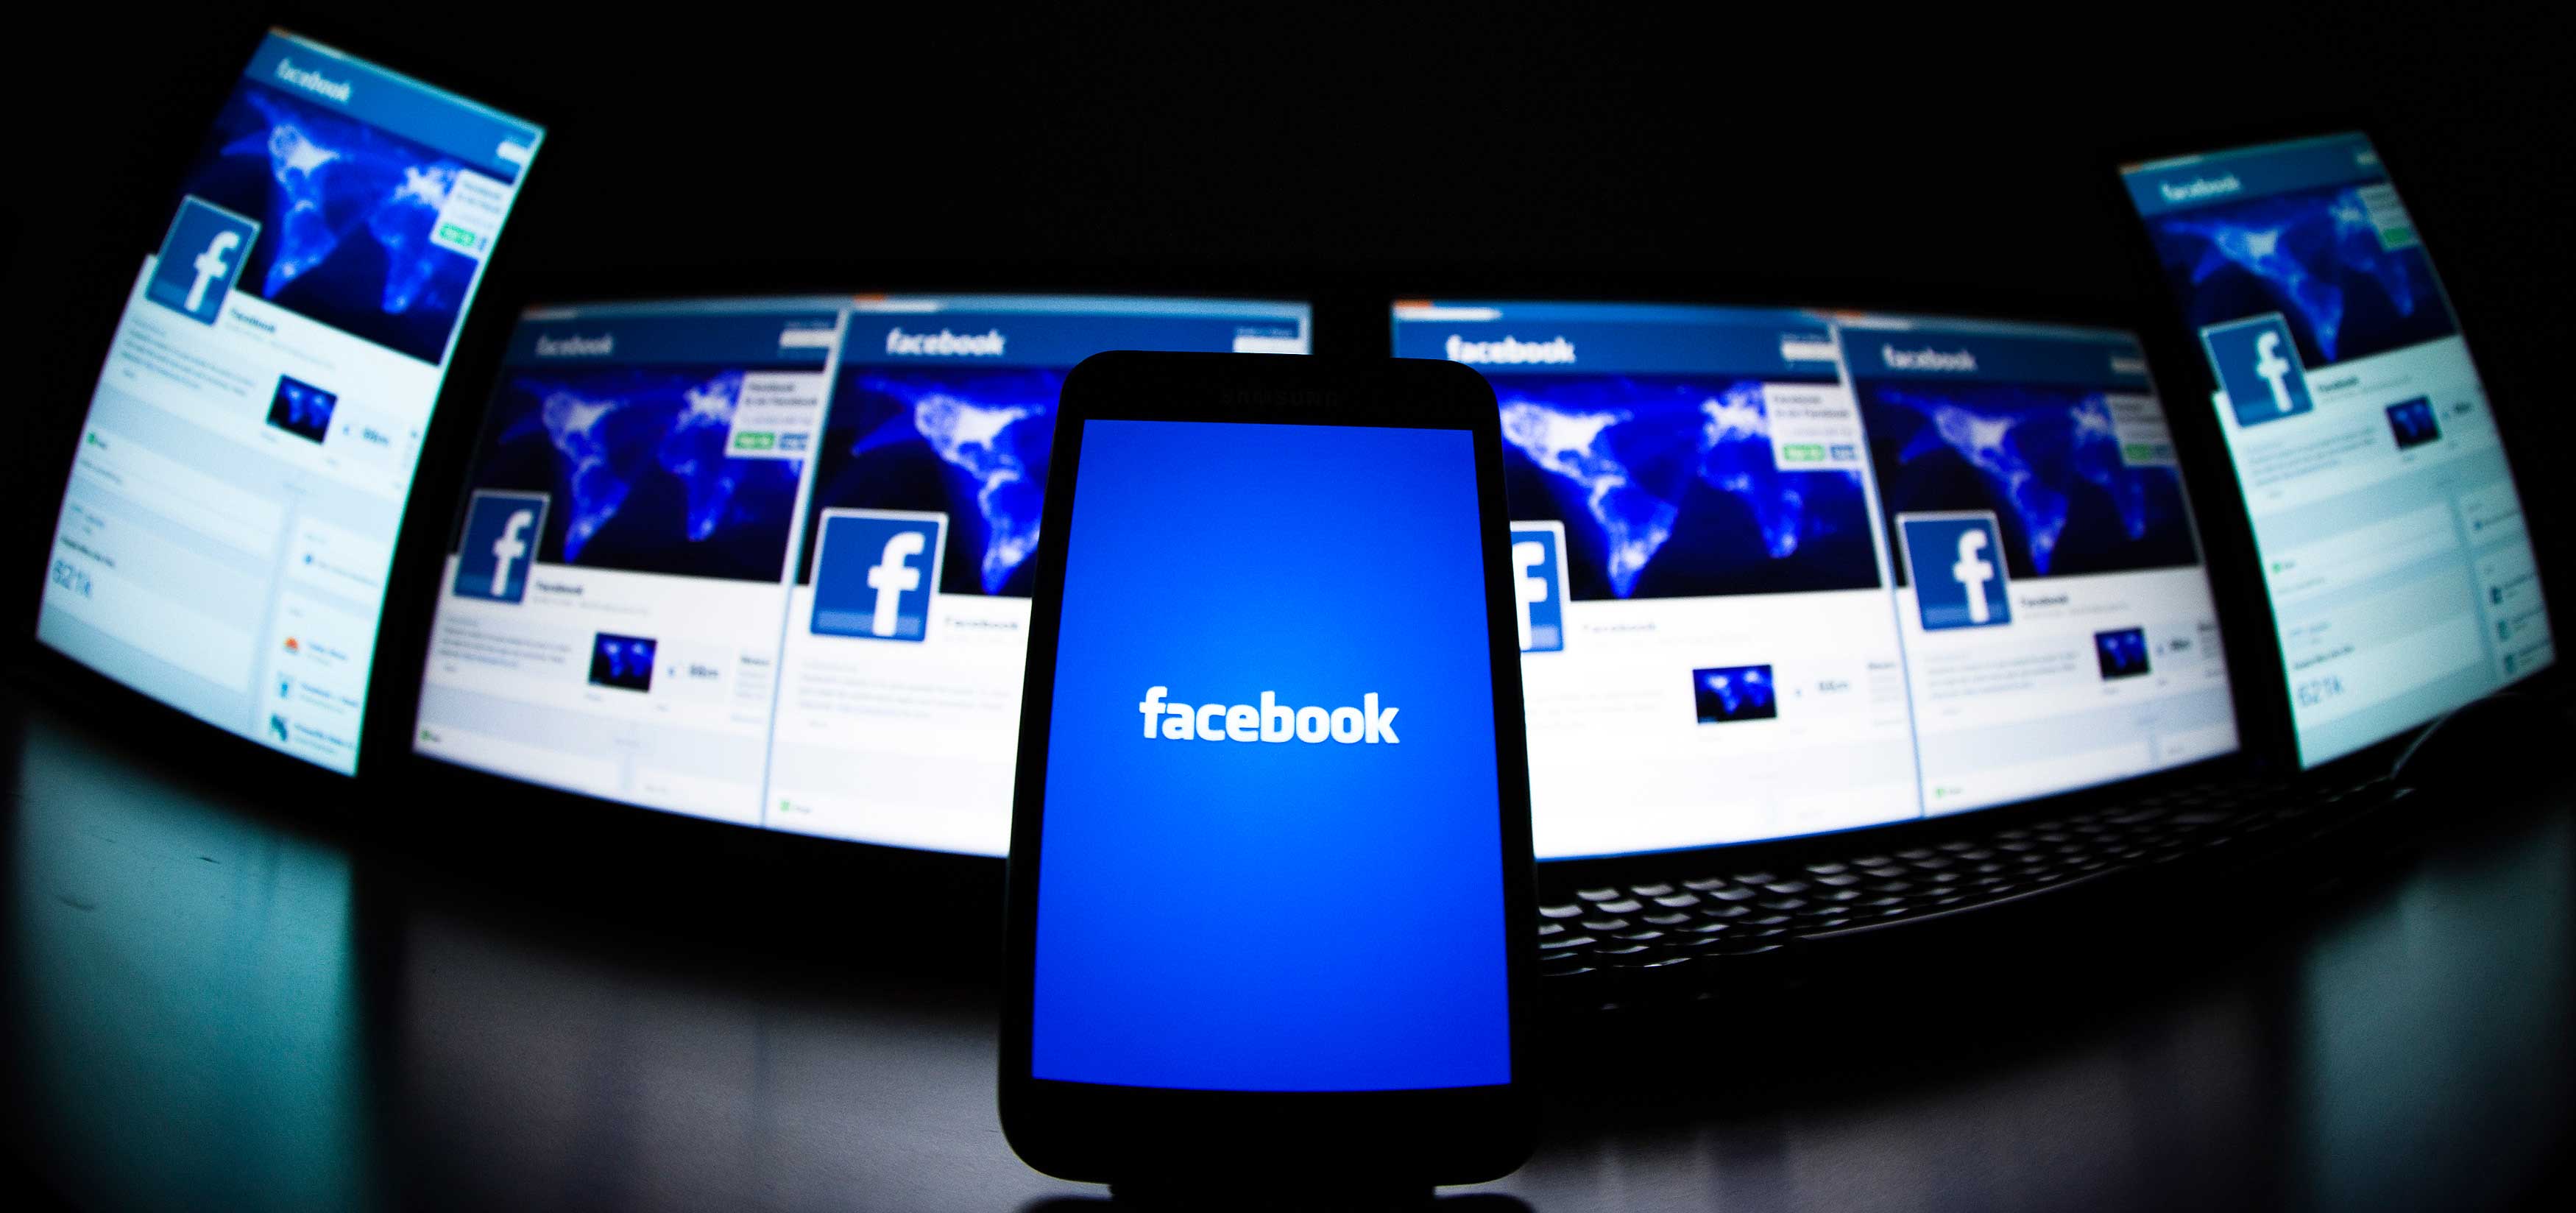 Facebook, uno de los gigantes de la perfilación online. (Foto: Valentin Flauraud / Reuters)